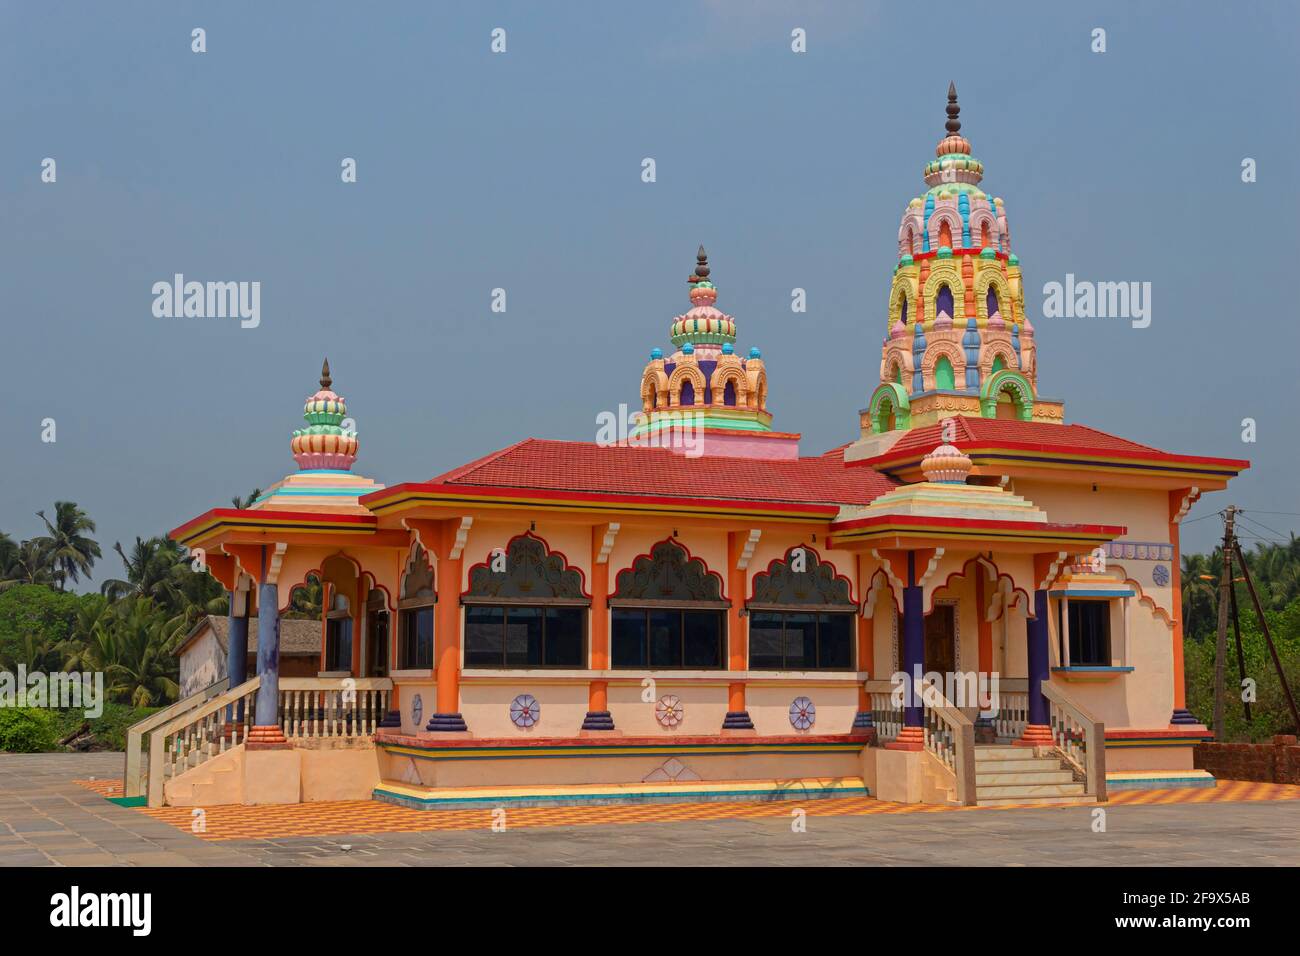 Vista lateral del templo de Shri Hanuman, Guhagar, Ratnagiri, Maharashtra, India. Foto de stock